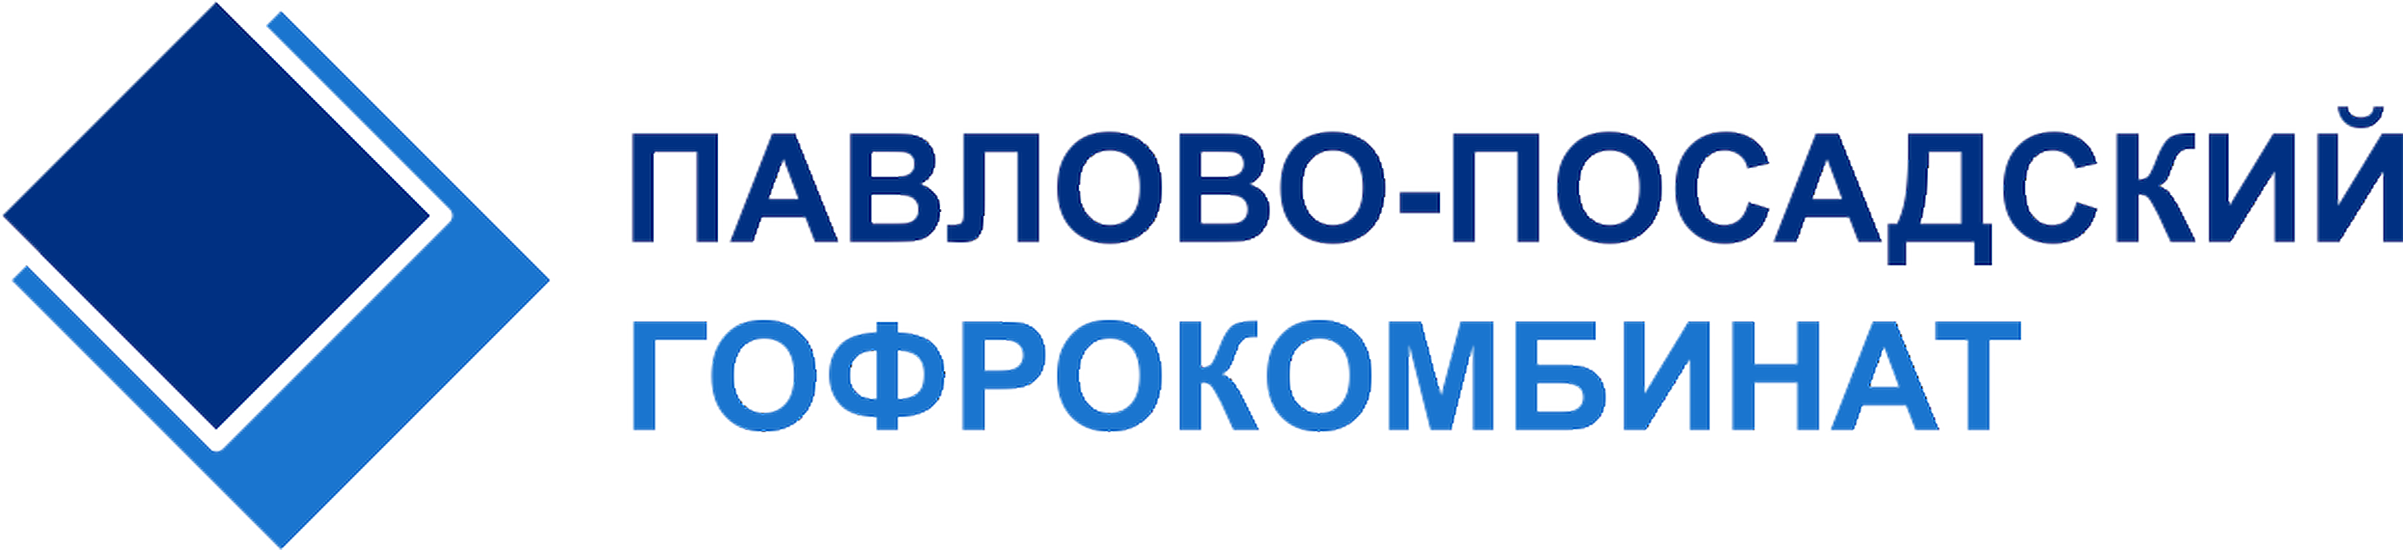 ООО «ПП Гофрокомбинат» - Город Павловский Посад Logo-550.png